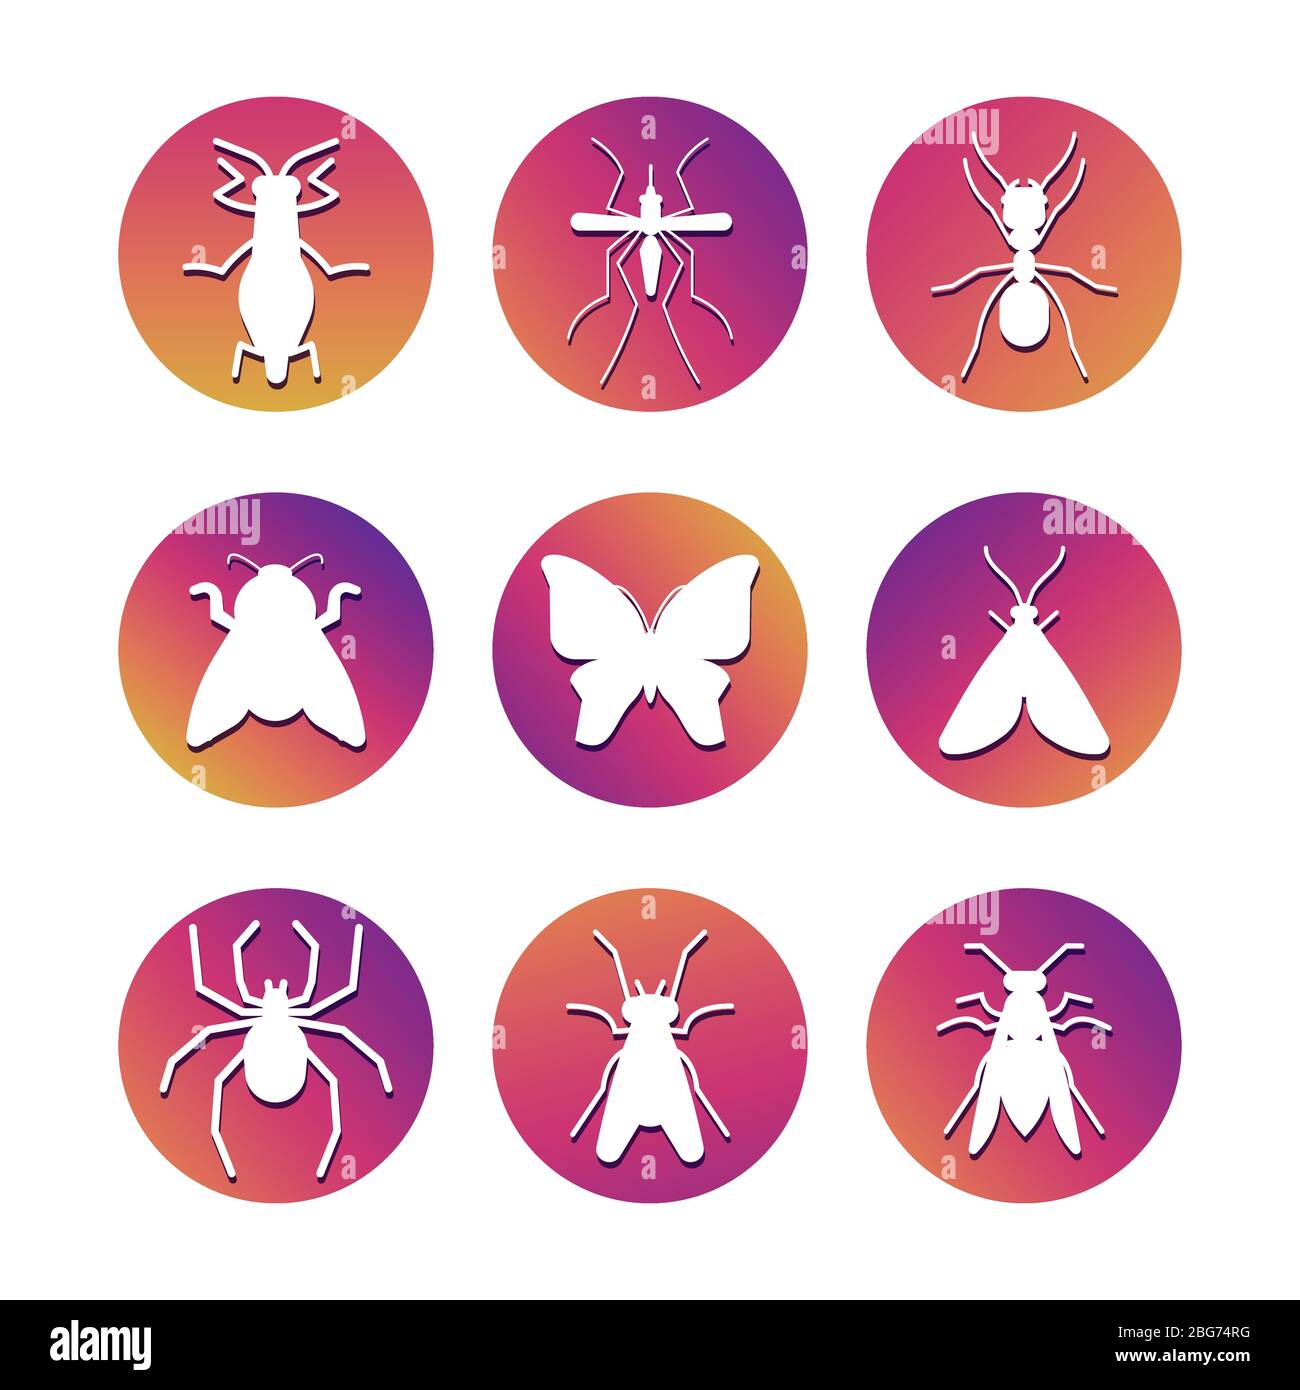 Silhouettes d'insectes blancs sur les rondes de coloful. Jeu d'icônes d'insectes populaires. Illustration vectorielle Illustration de Vecteur